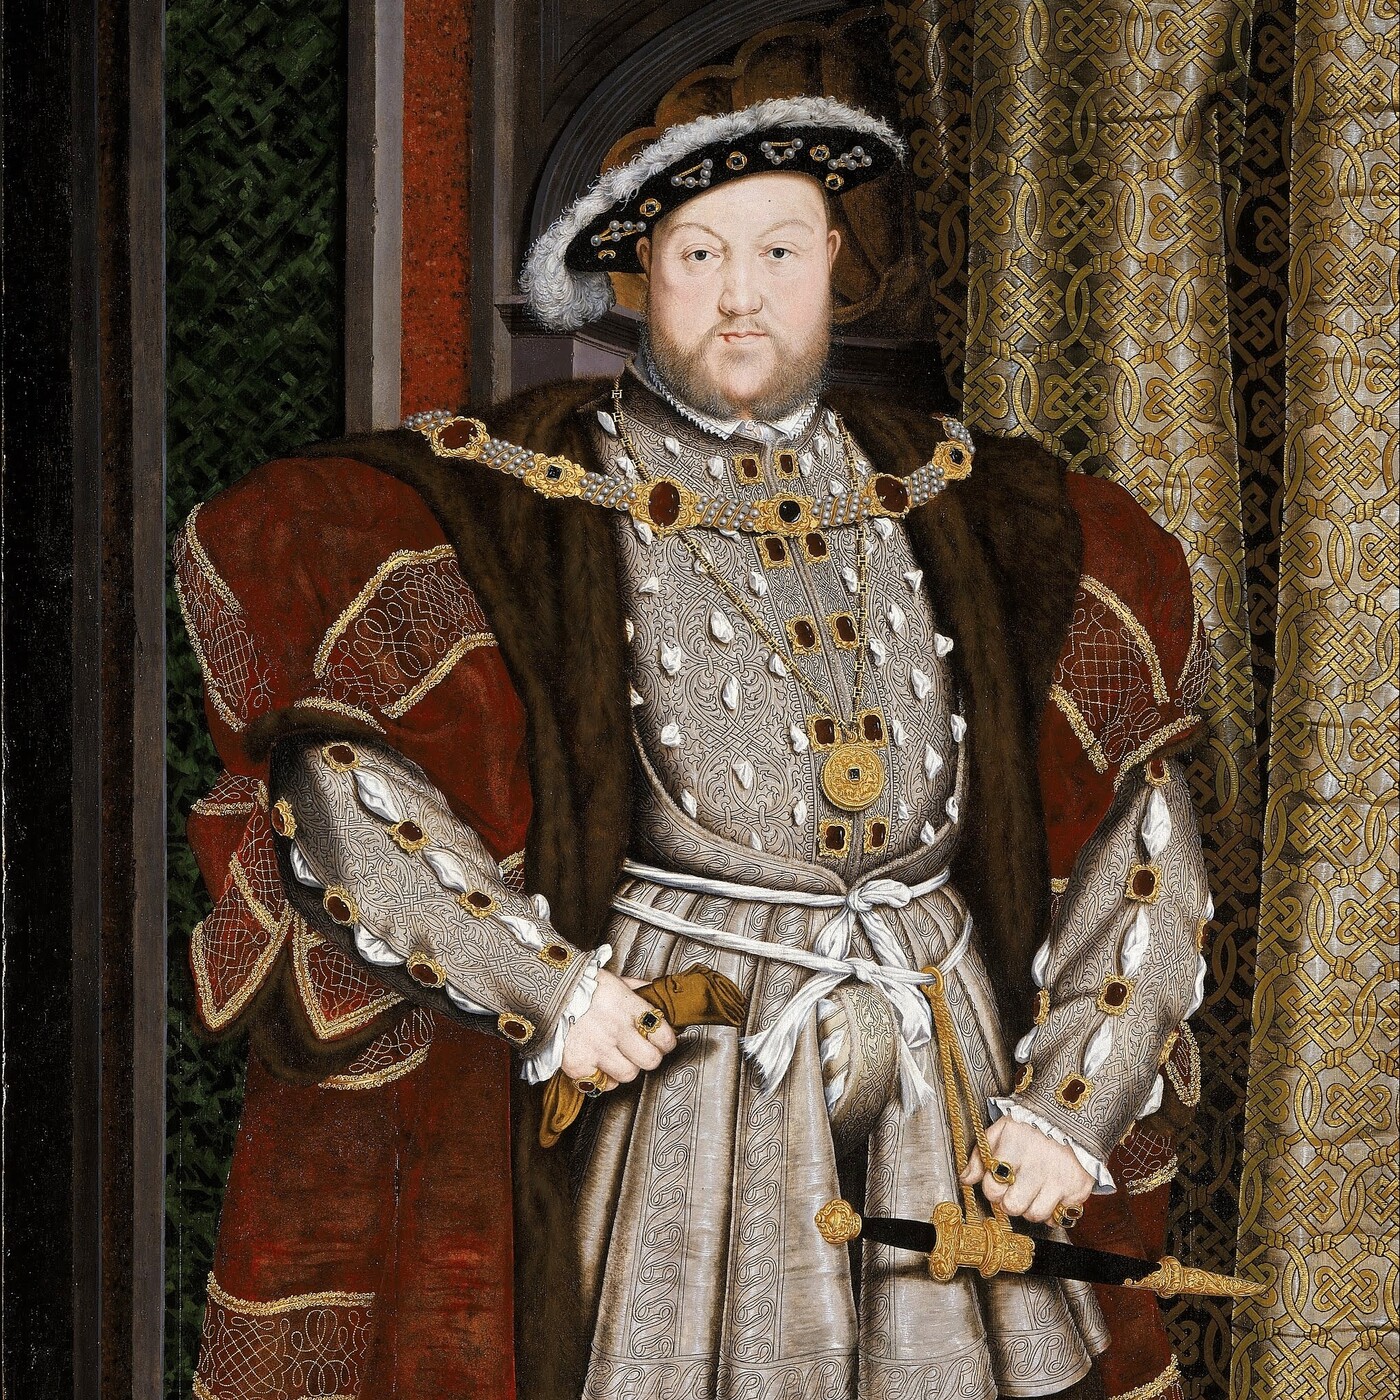 Enrique VIII, Amor y venganza en la corte de los Tudor